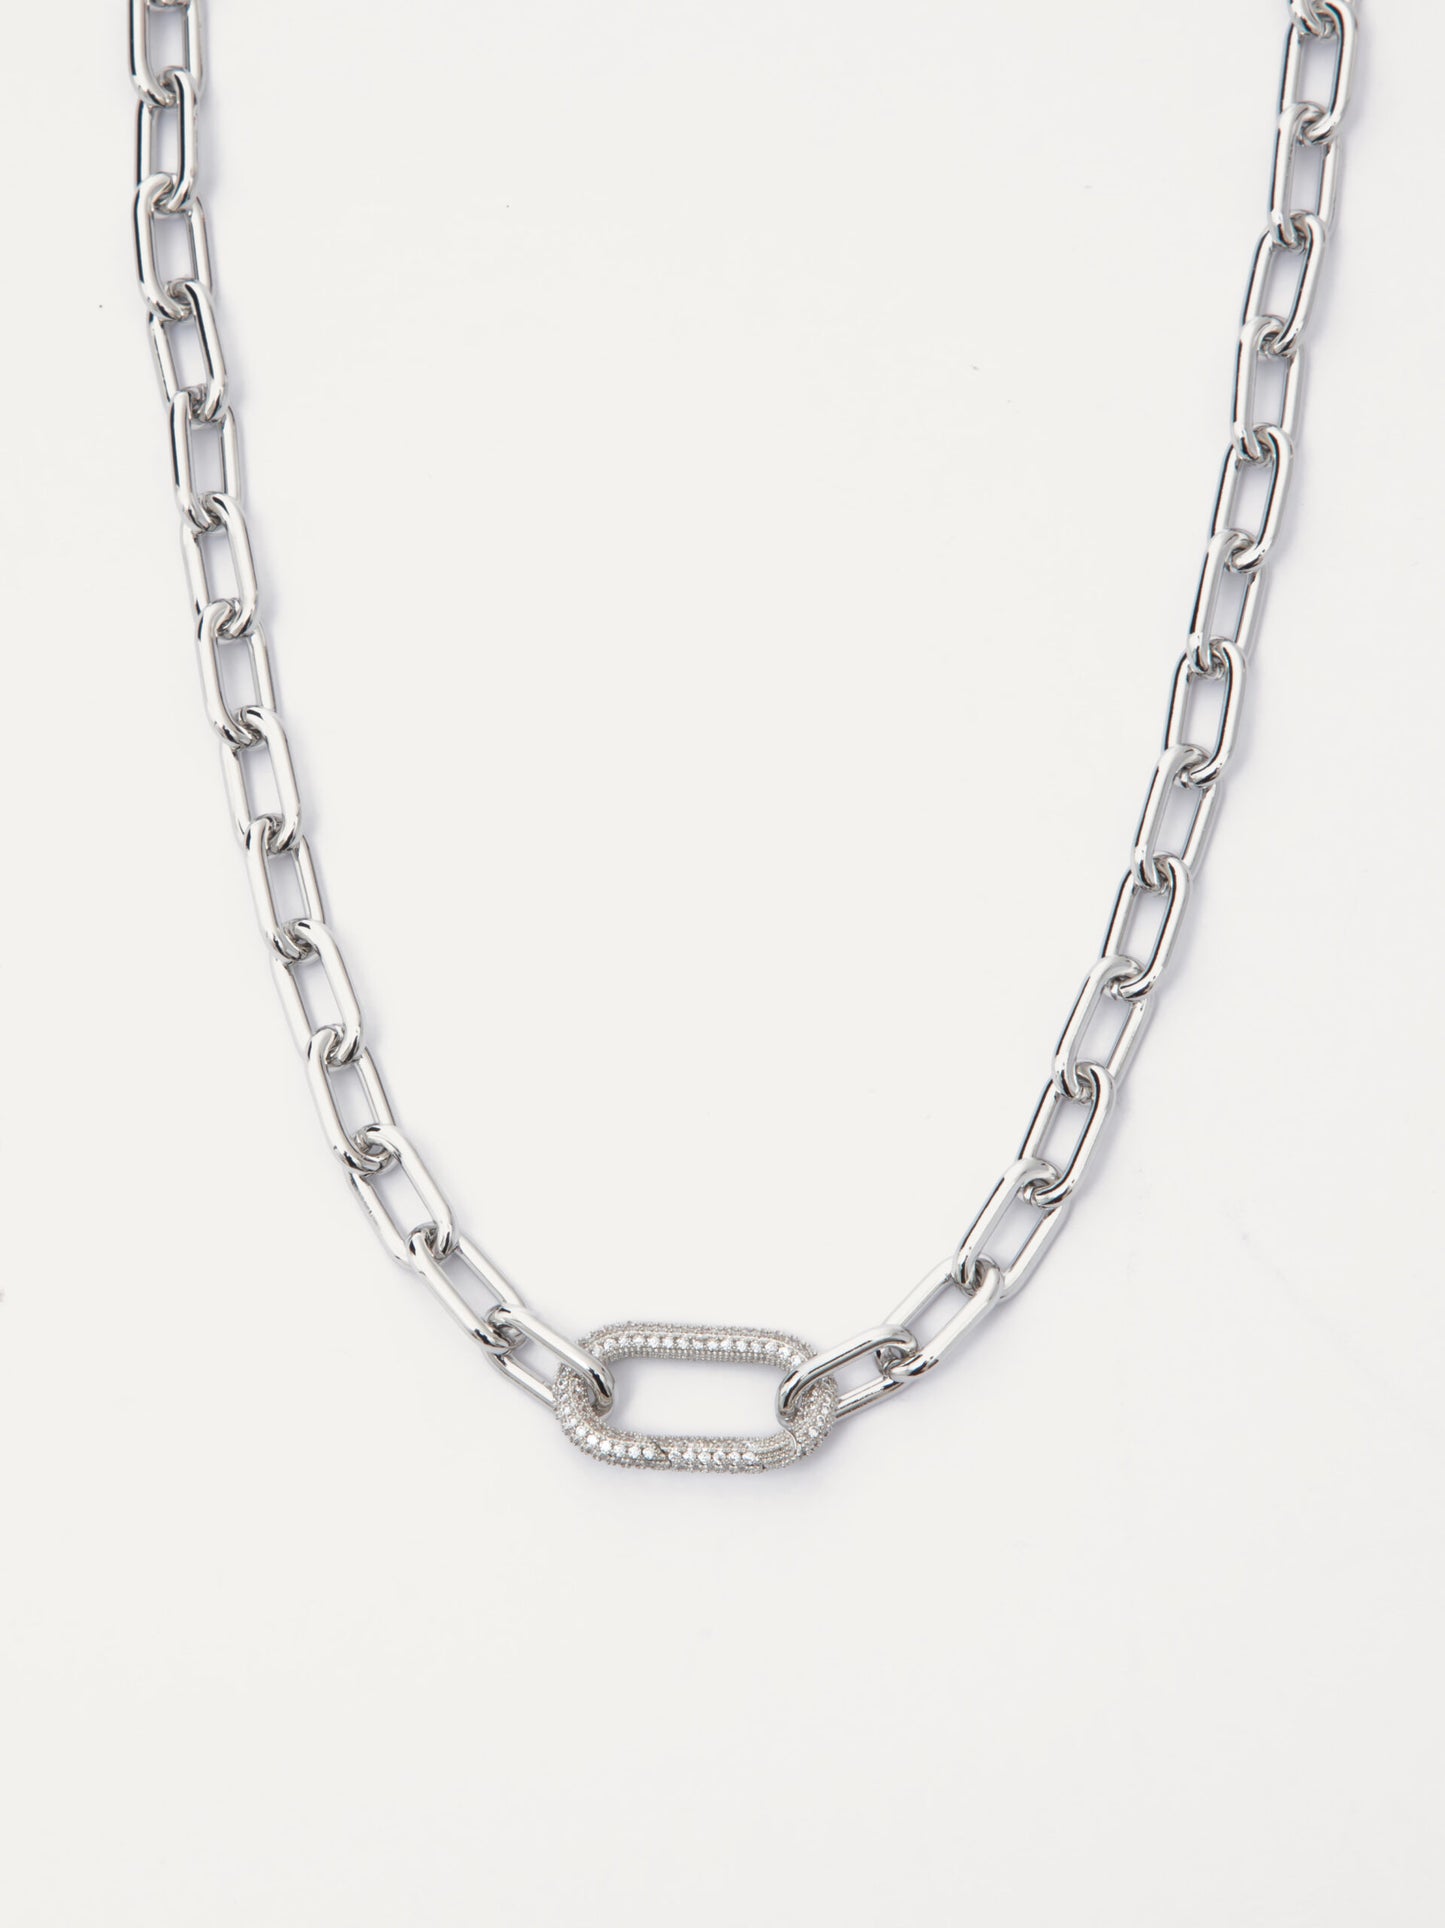 PARIS Necklace in Silver